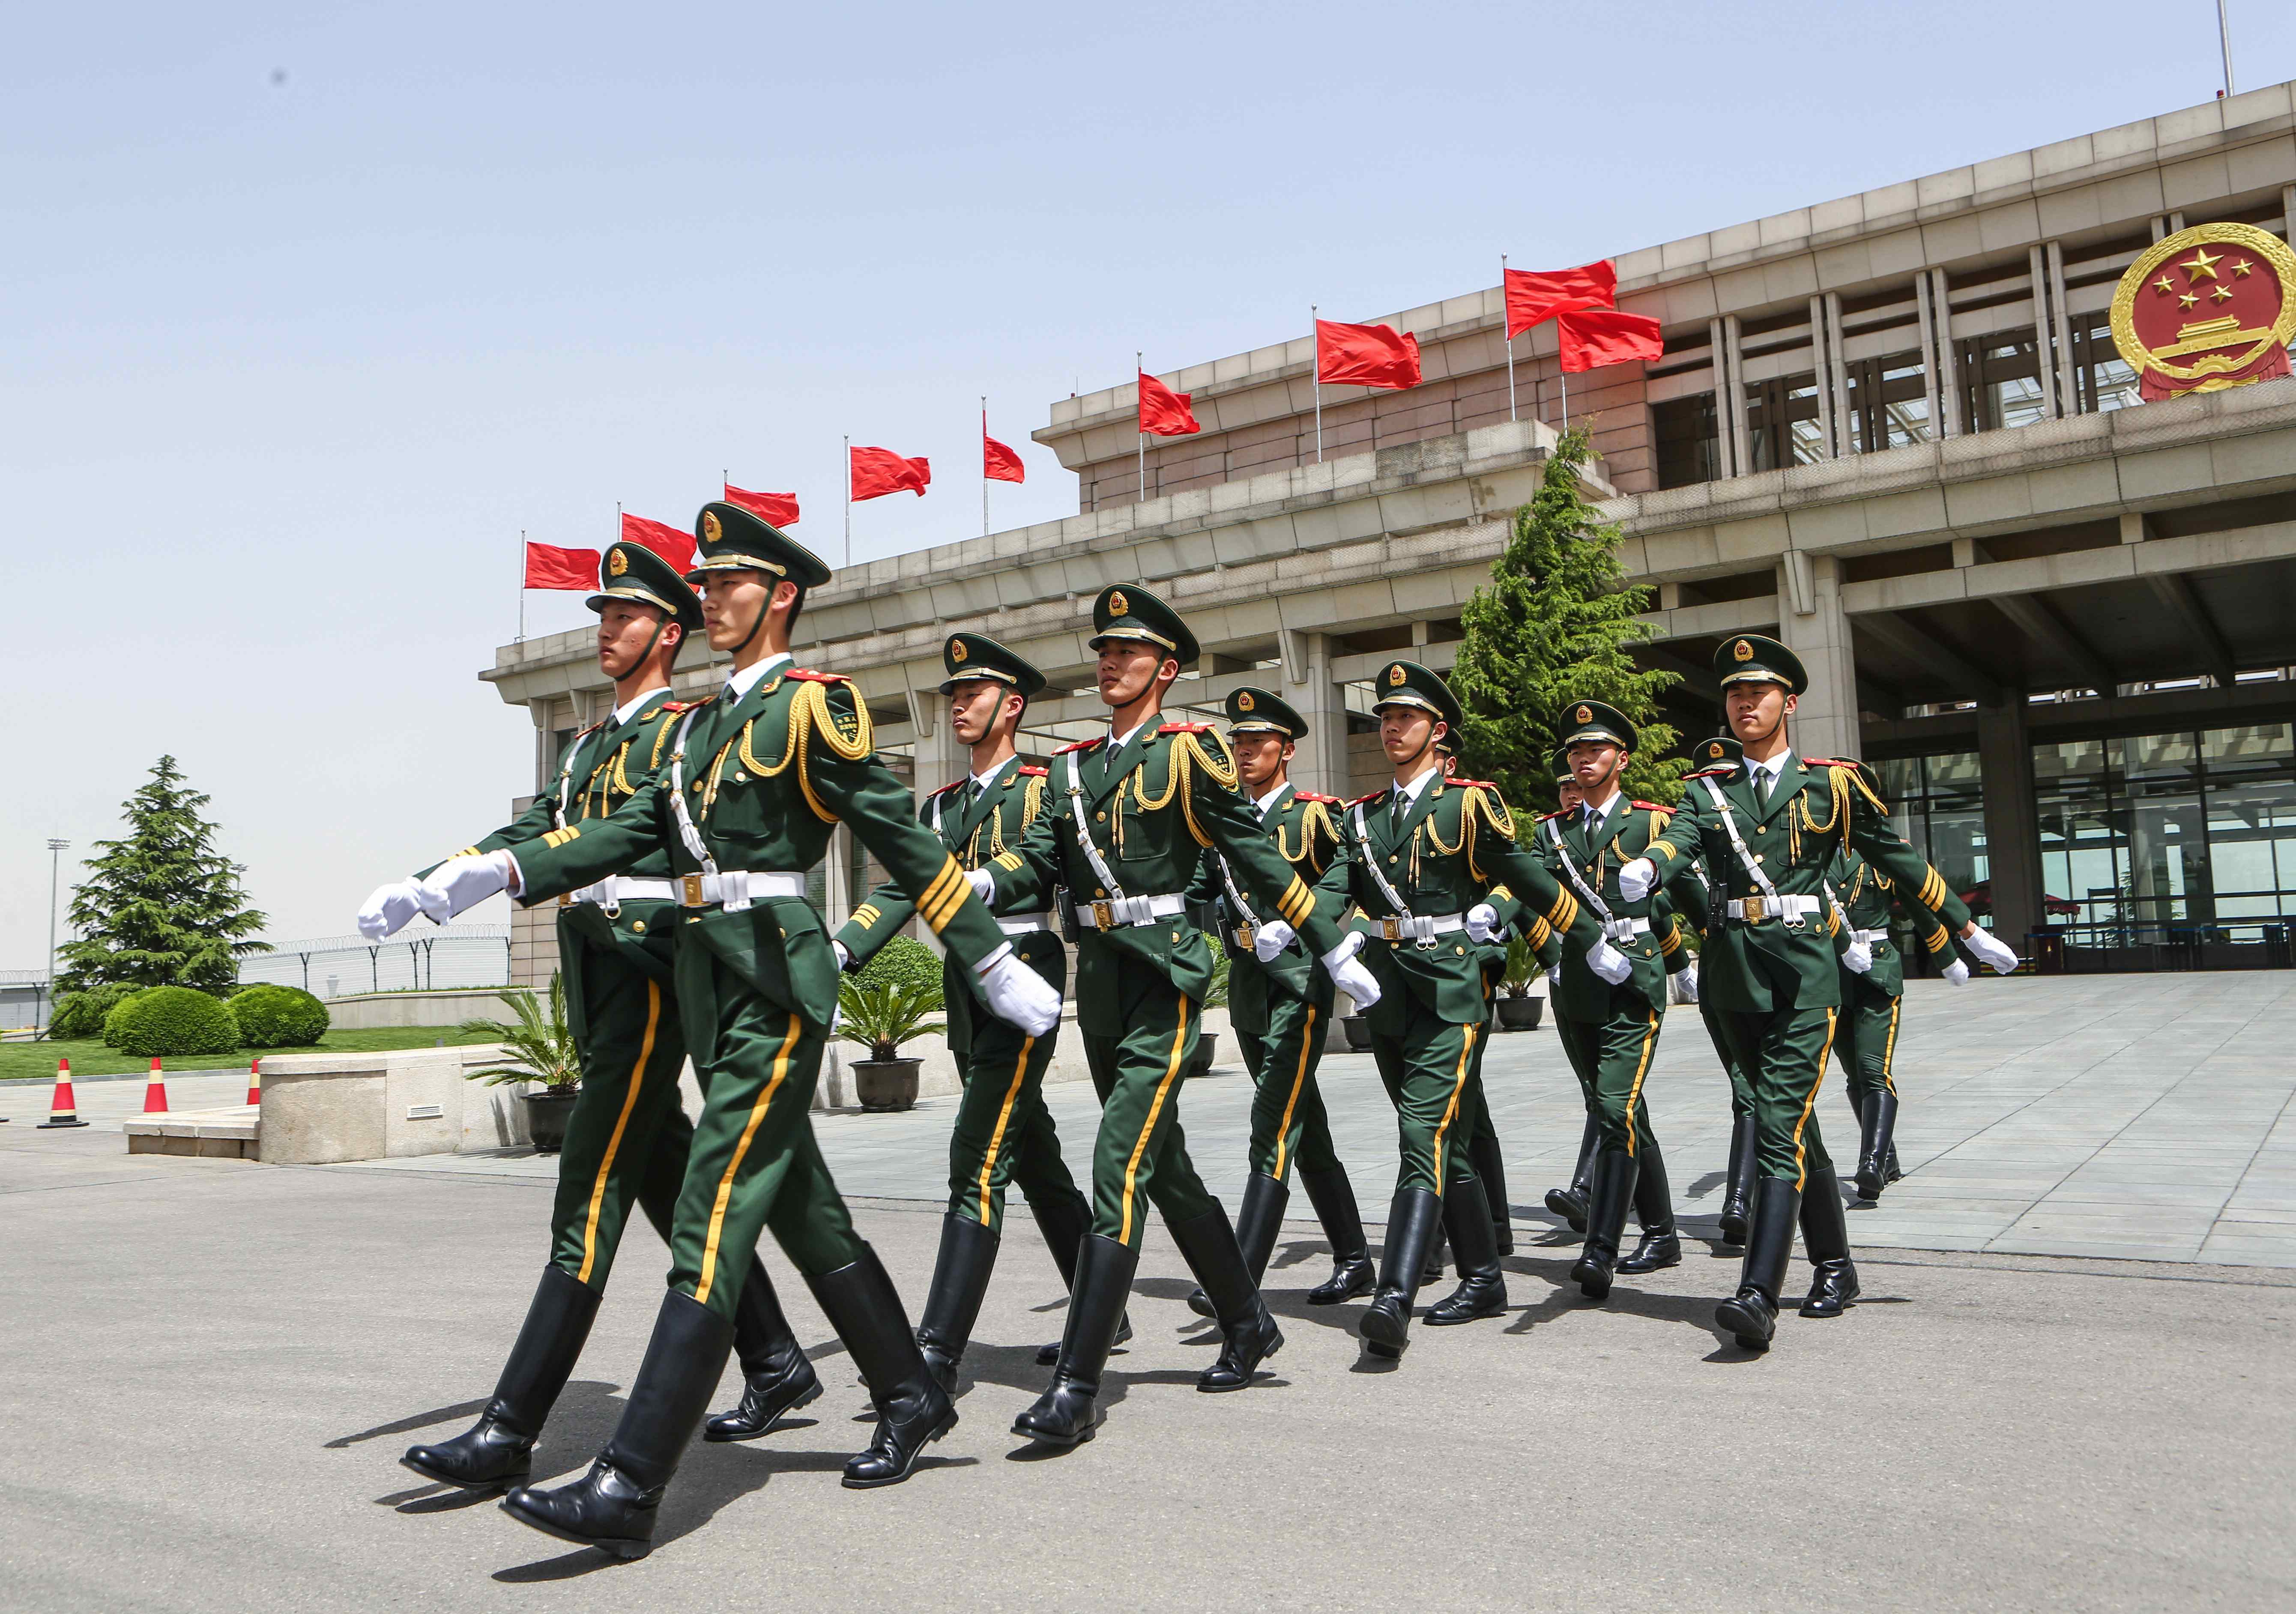 武警北京总队执勤十一支队仪仗礼兵在首都机场国门前走向执勤哨位